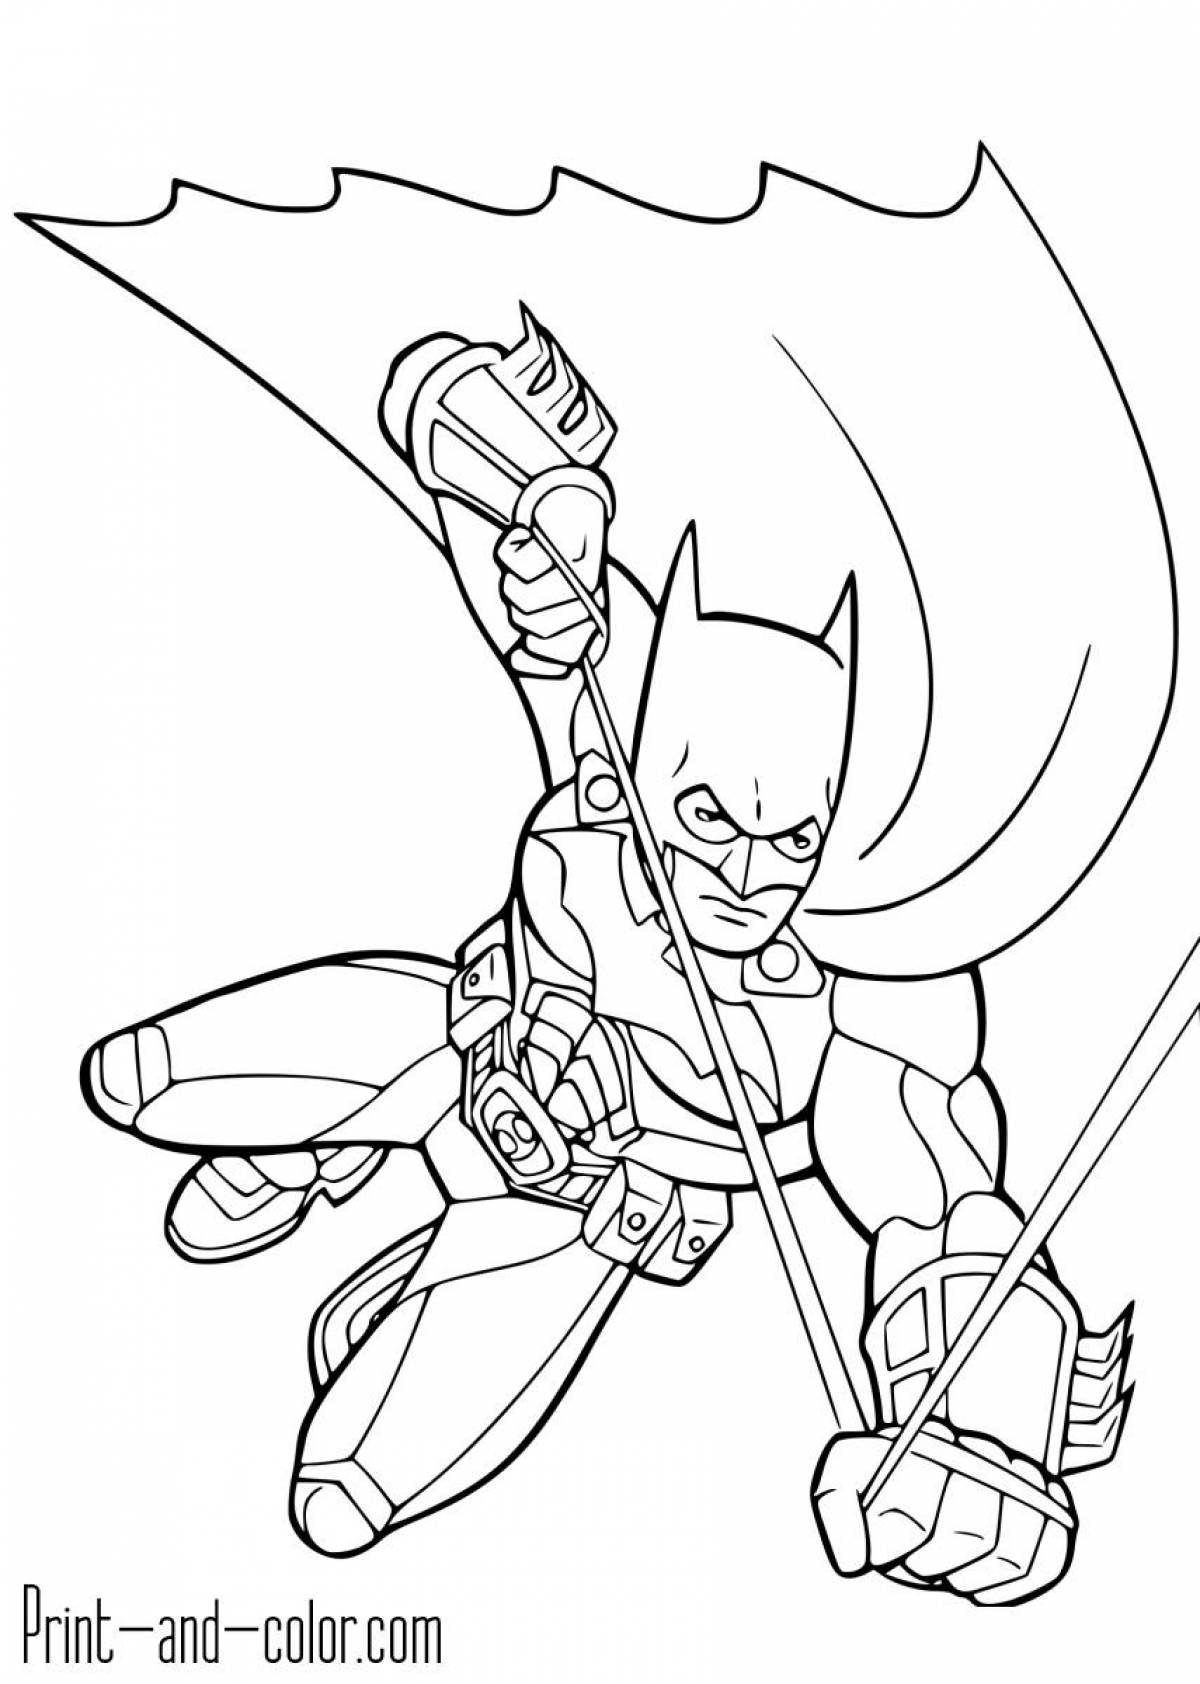 Impressive batman coloring book